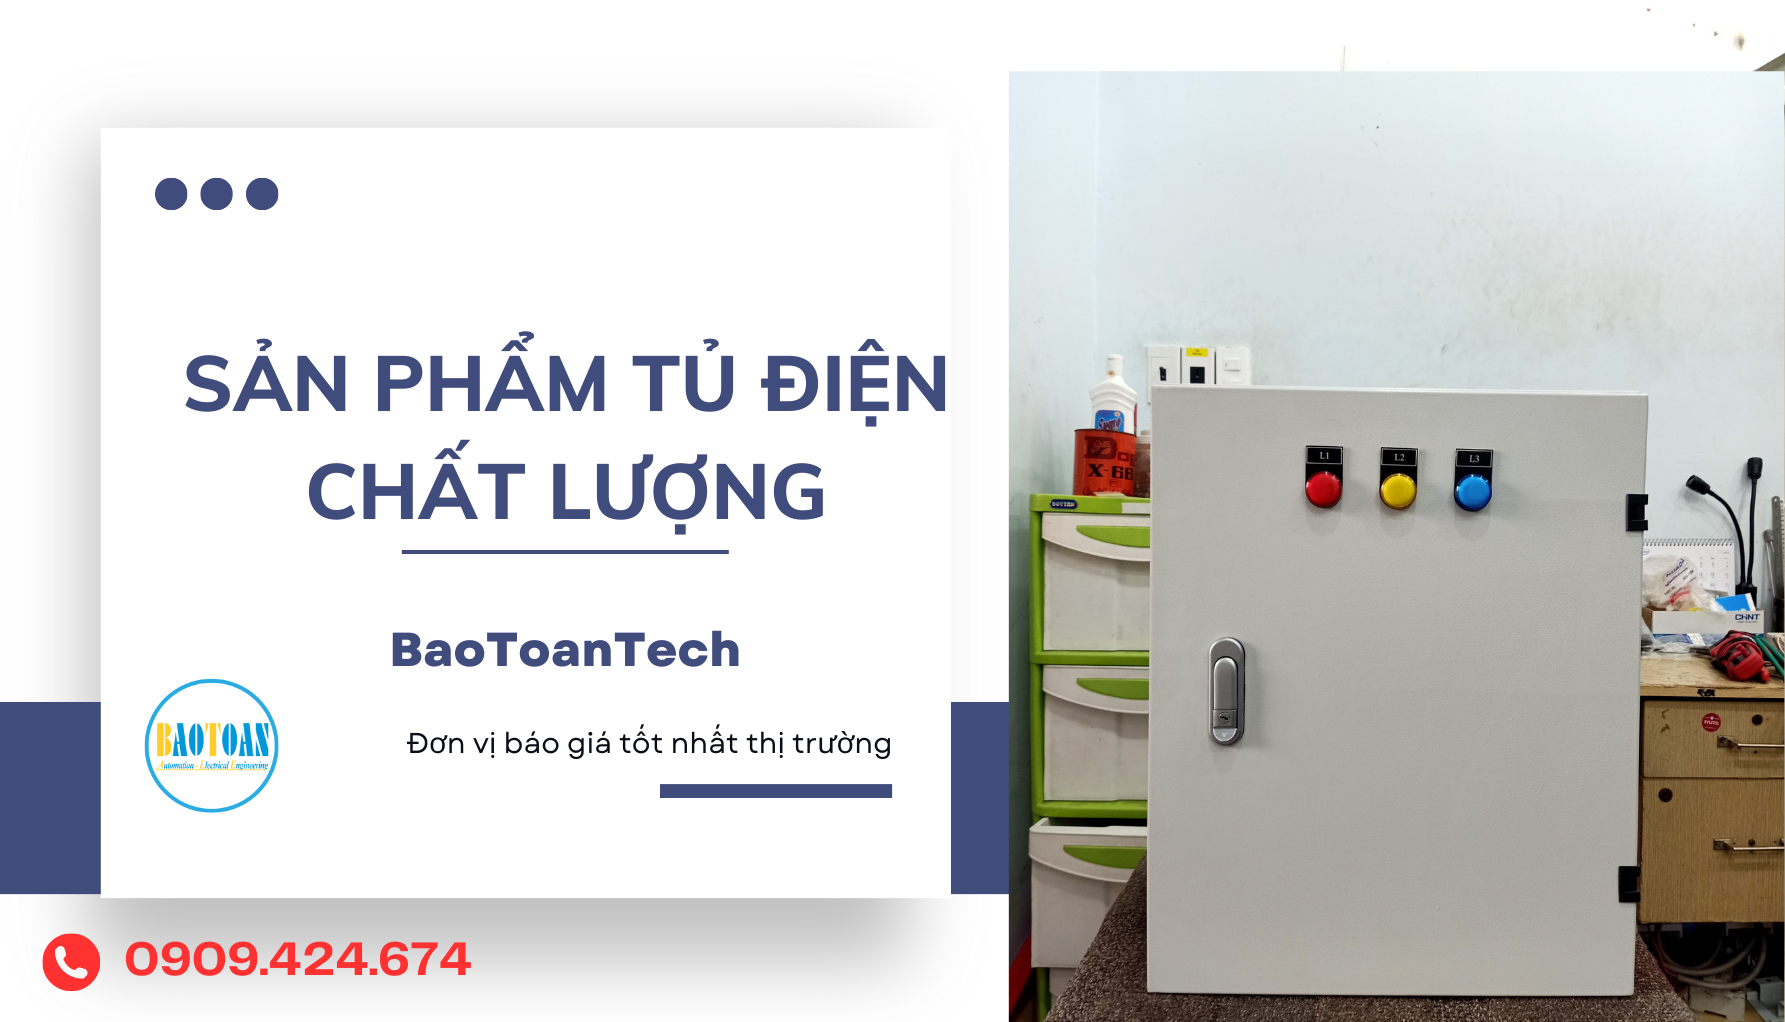 Báo giá tủ điện cấp nguồn căn hộ, chung cư tại BaoToanTech